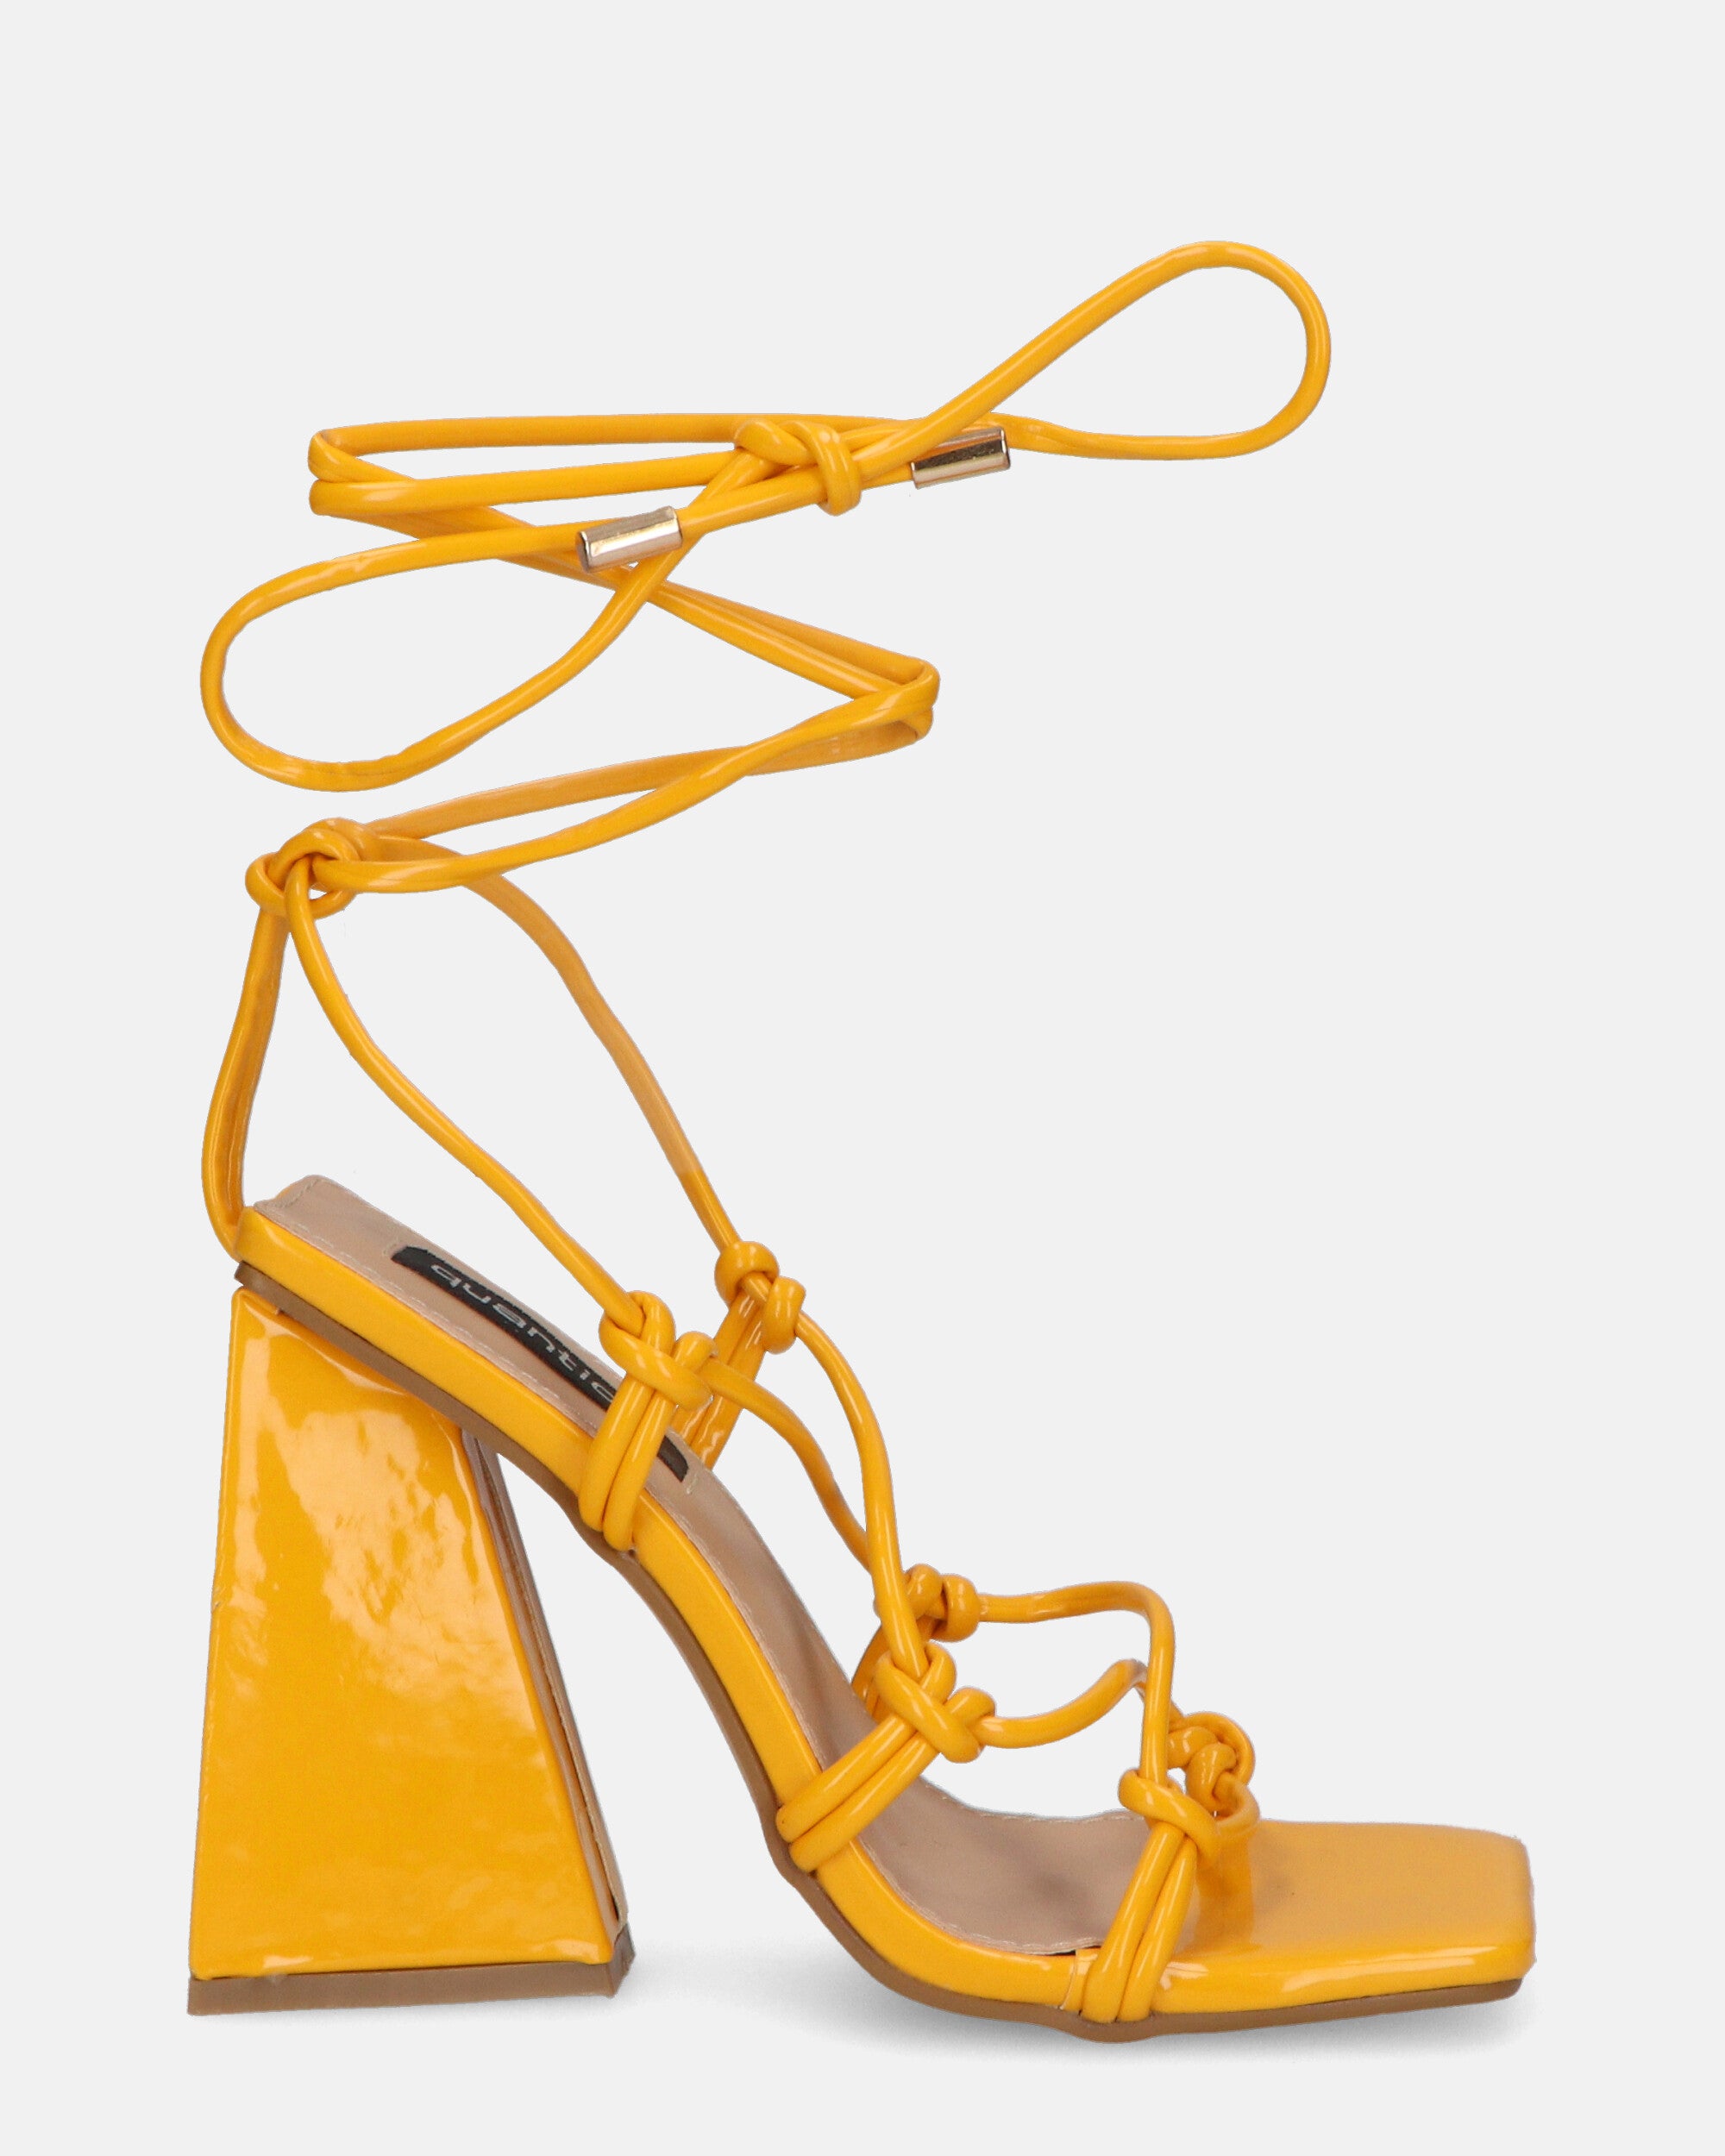 NURAY - sandali con tacco alto in glassy arancione con lacci